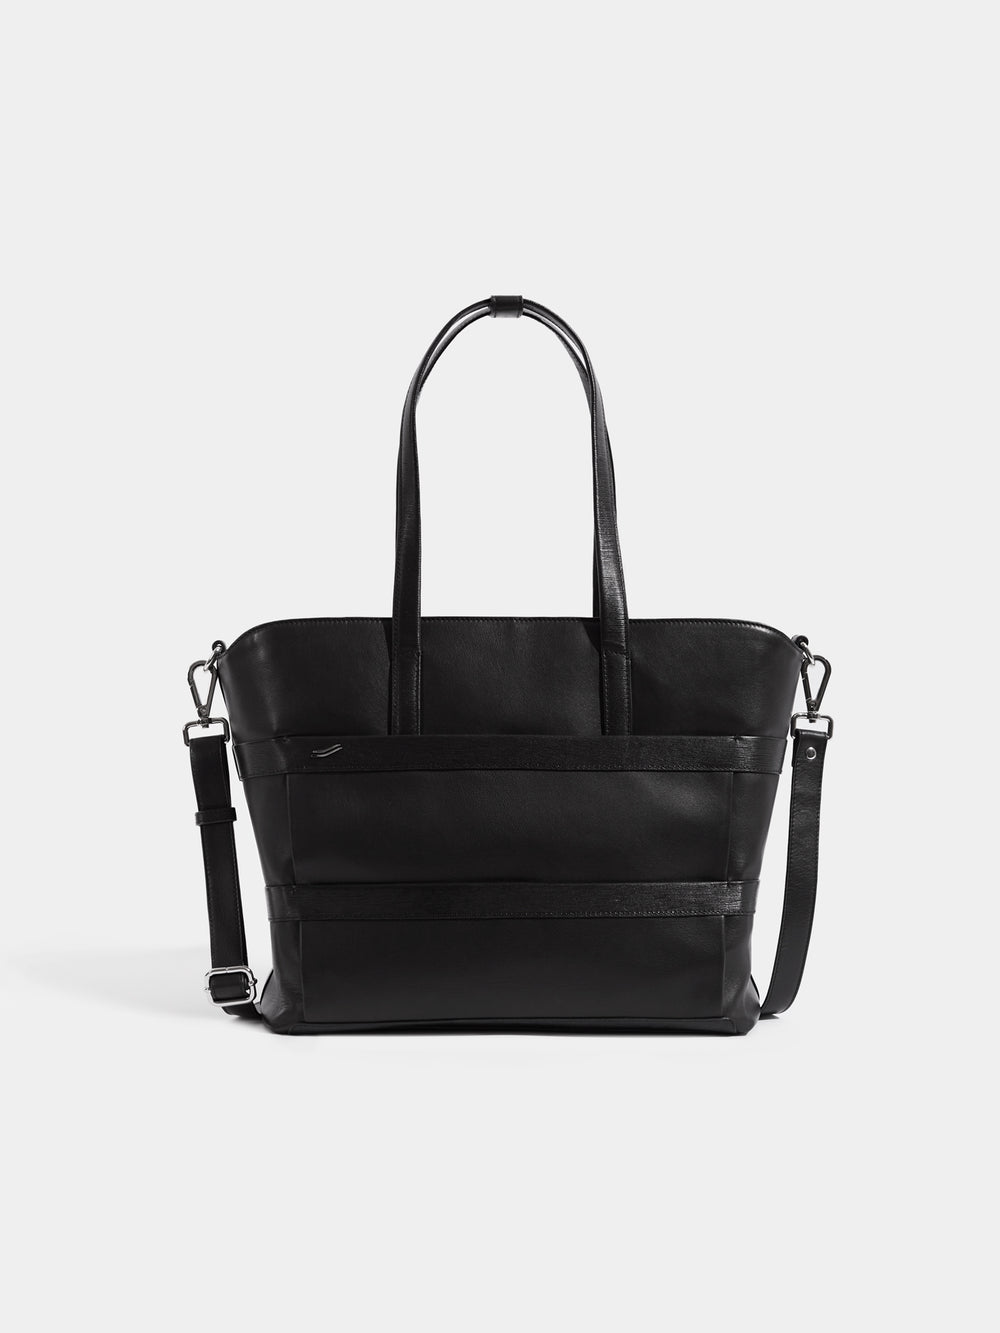 vocier vantage black leather tote bag front handtasche tragetasche